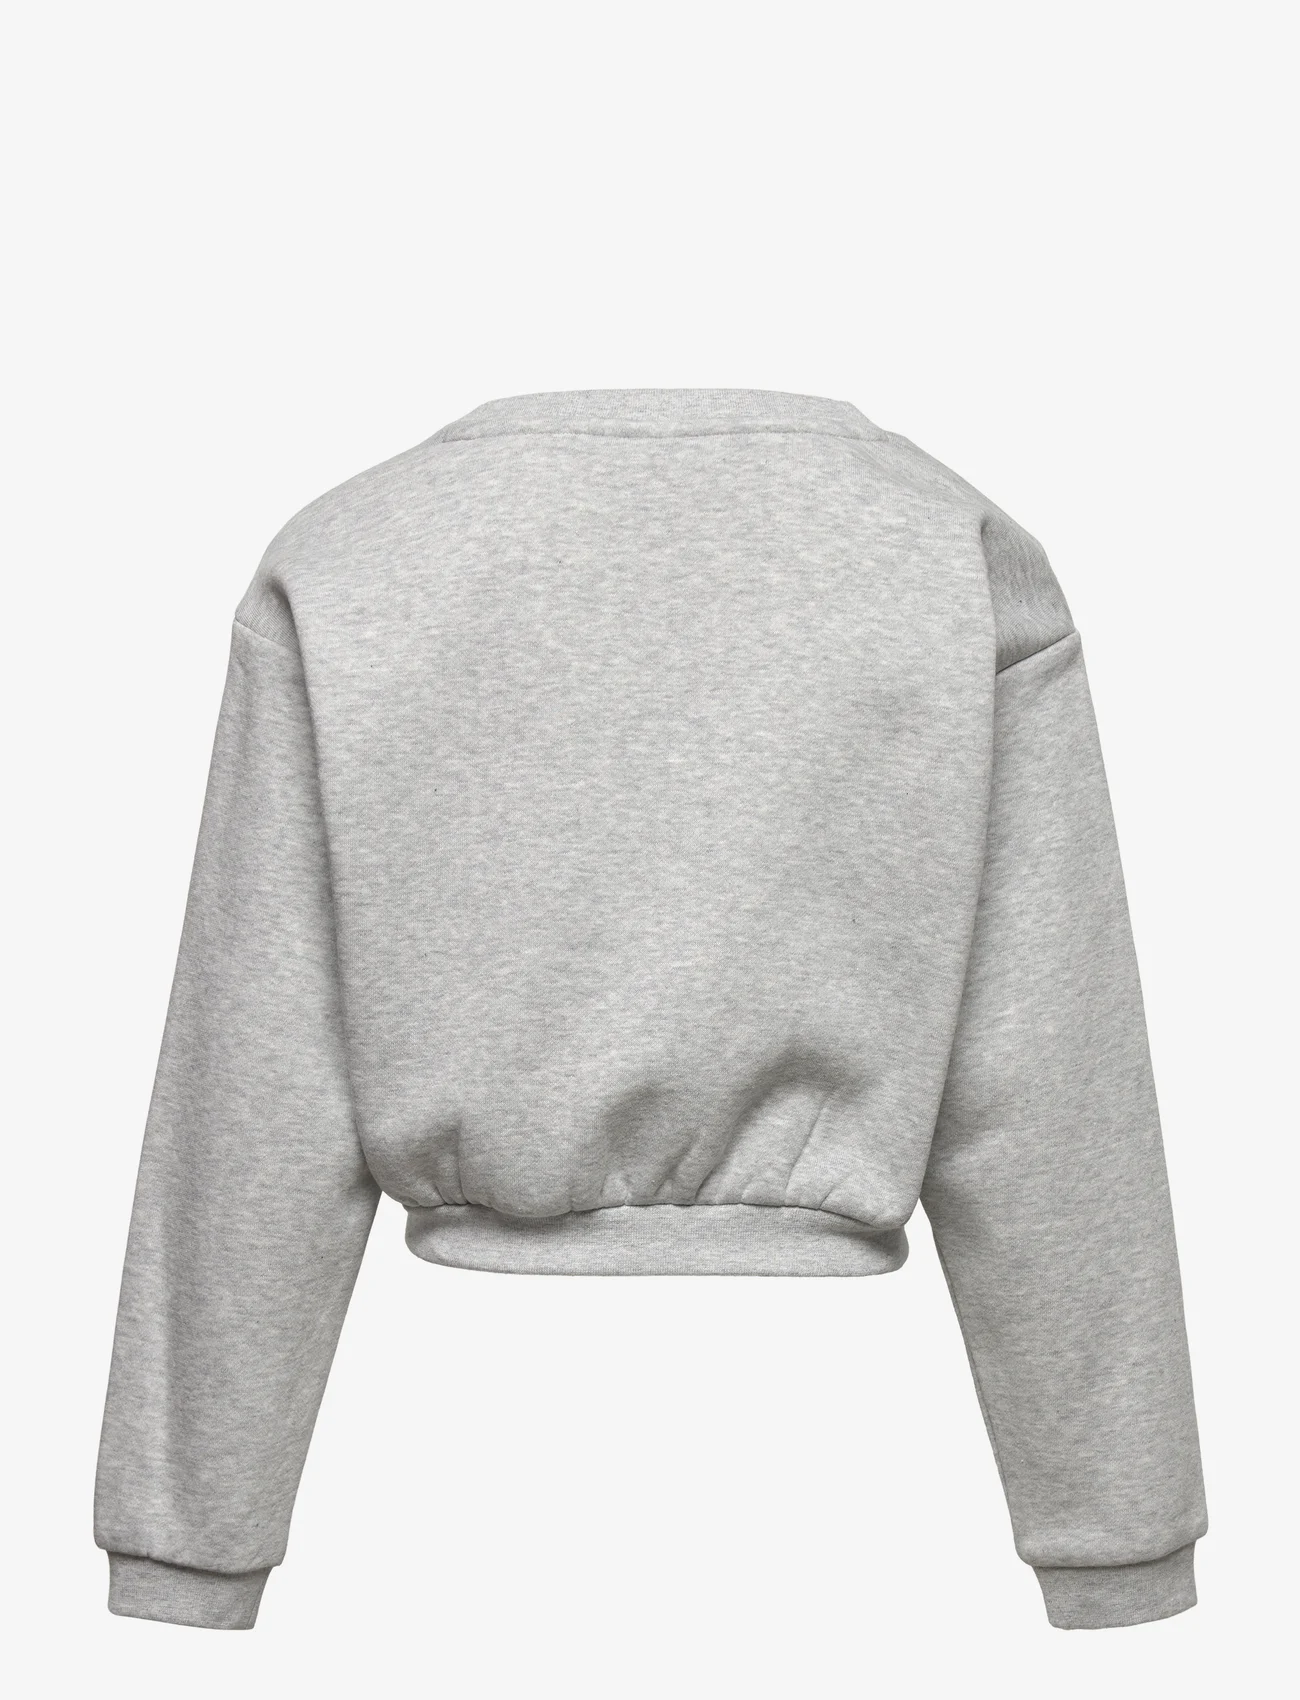 PUMA - Classics GRL Crew FL G - sweaters - light gray heather - 1